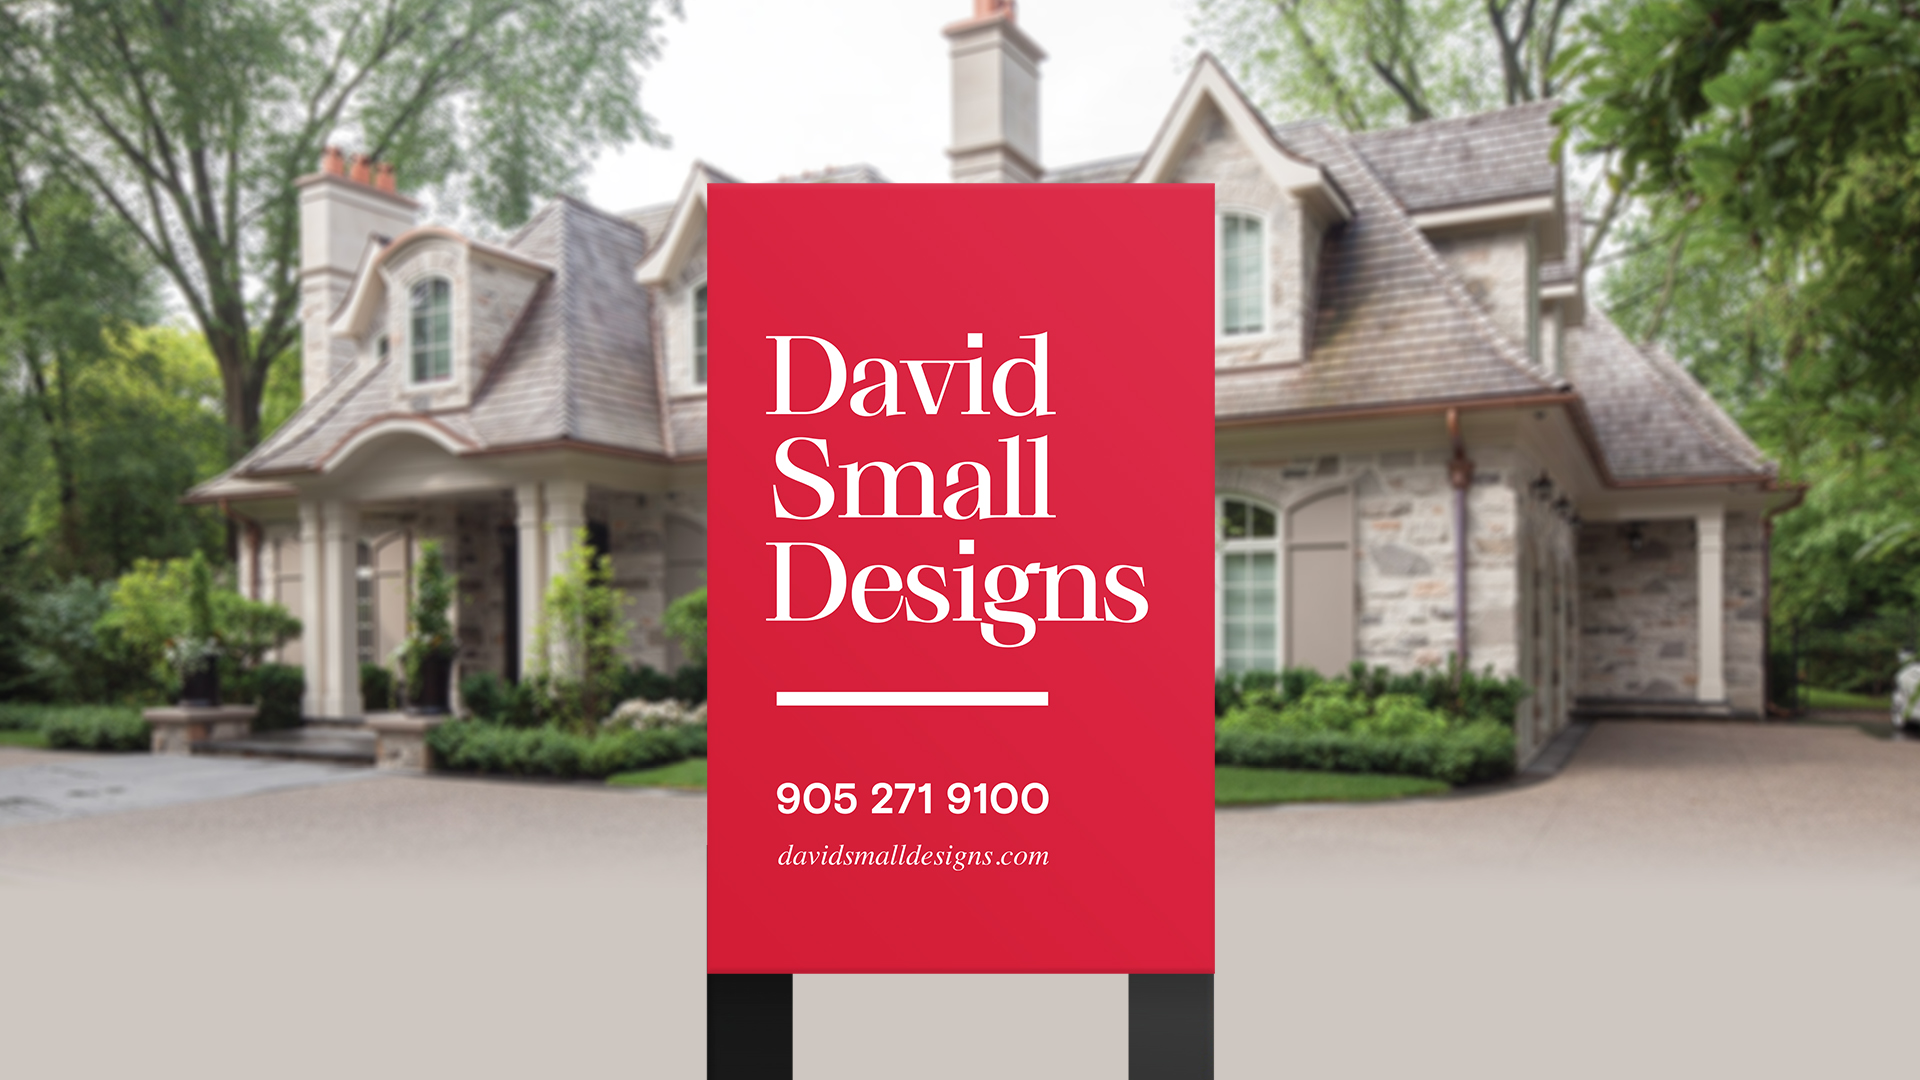 David Small Design Case Study